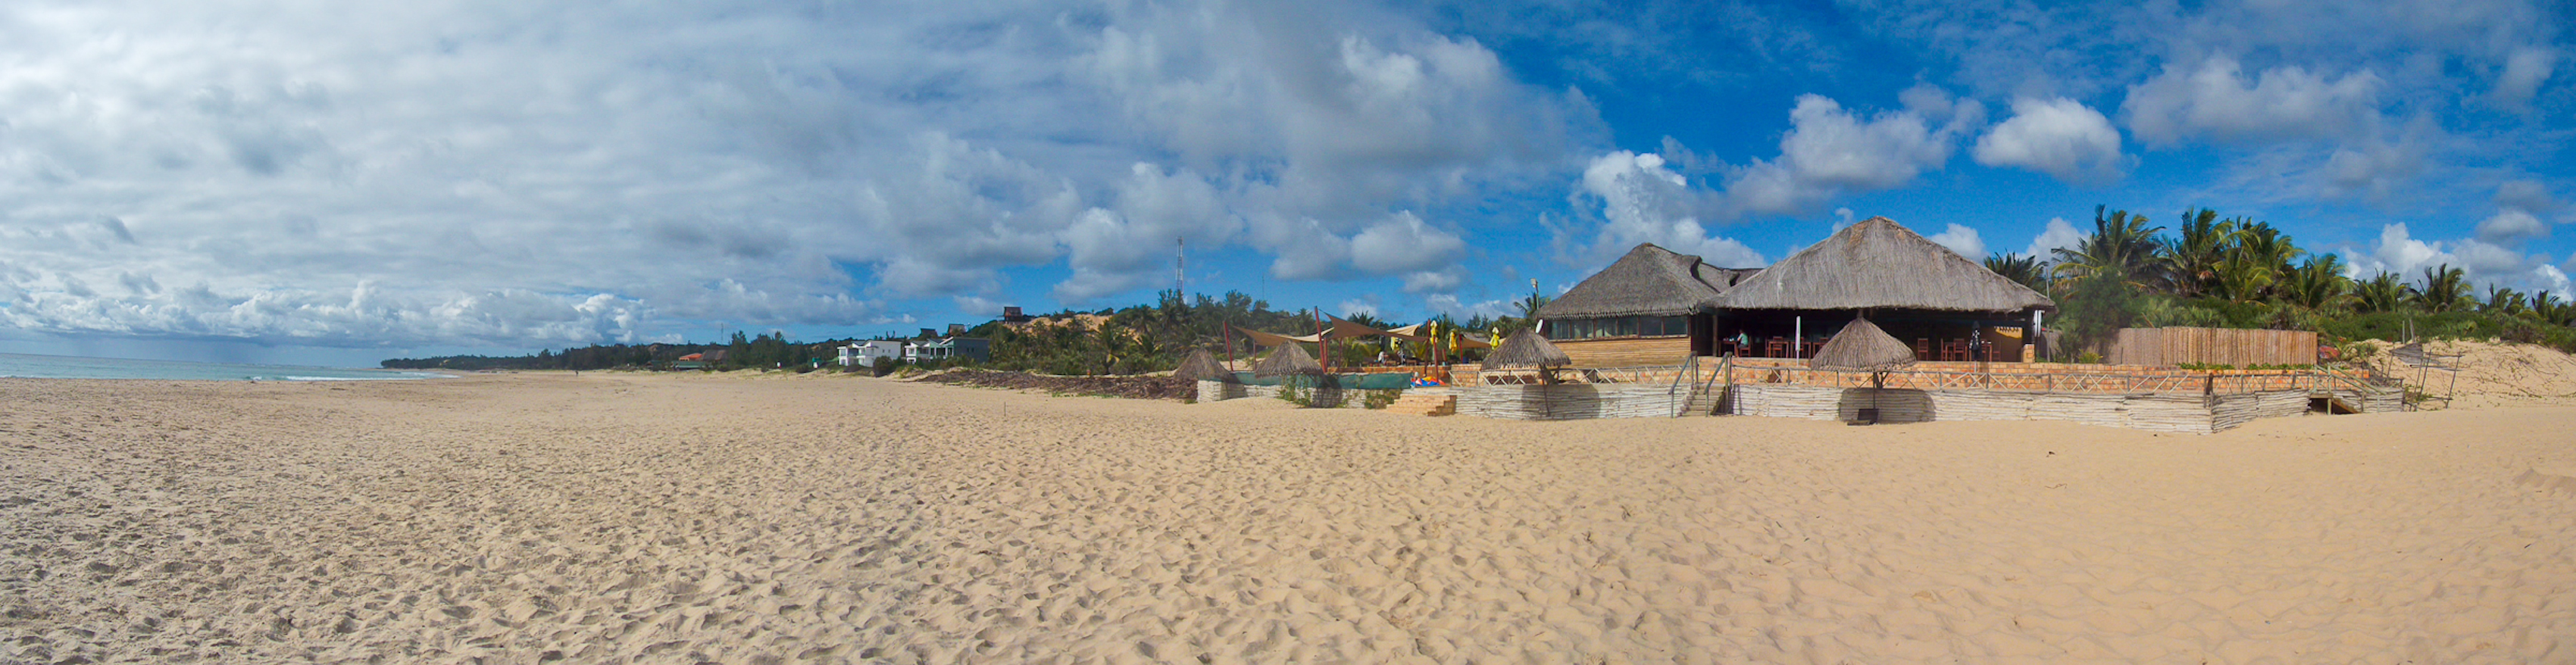 Afrika Beach Paradies: Reisen in Mosambik